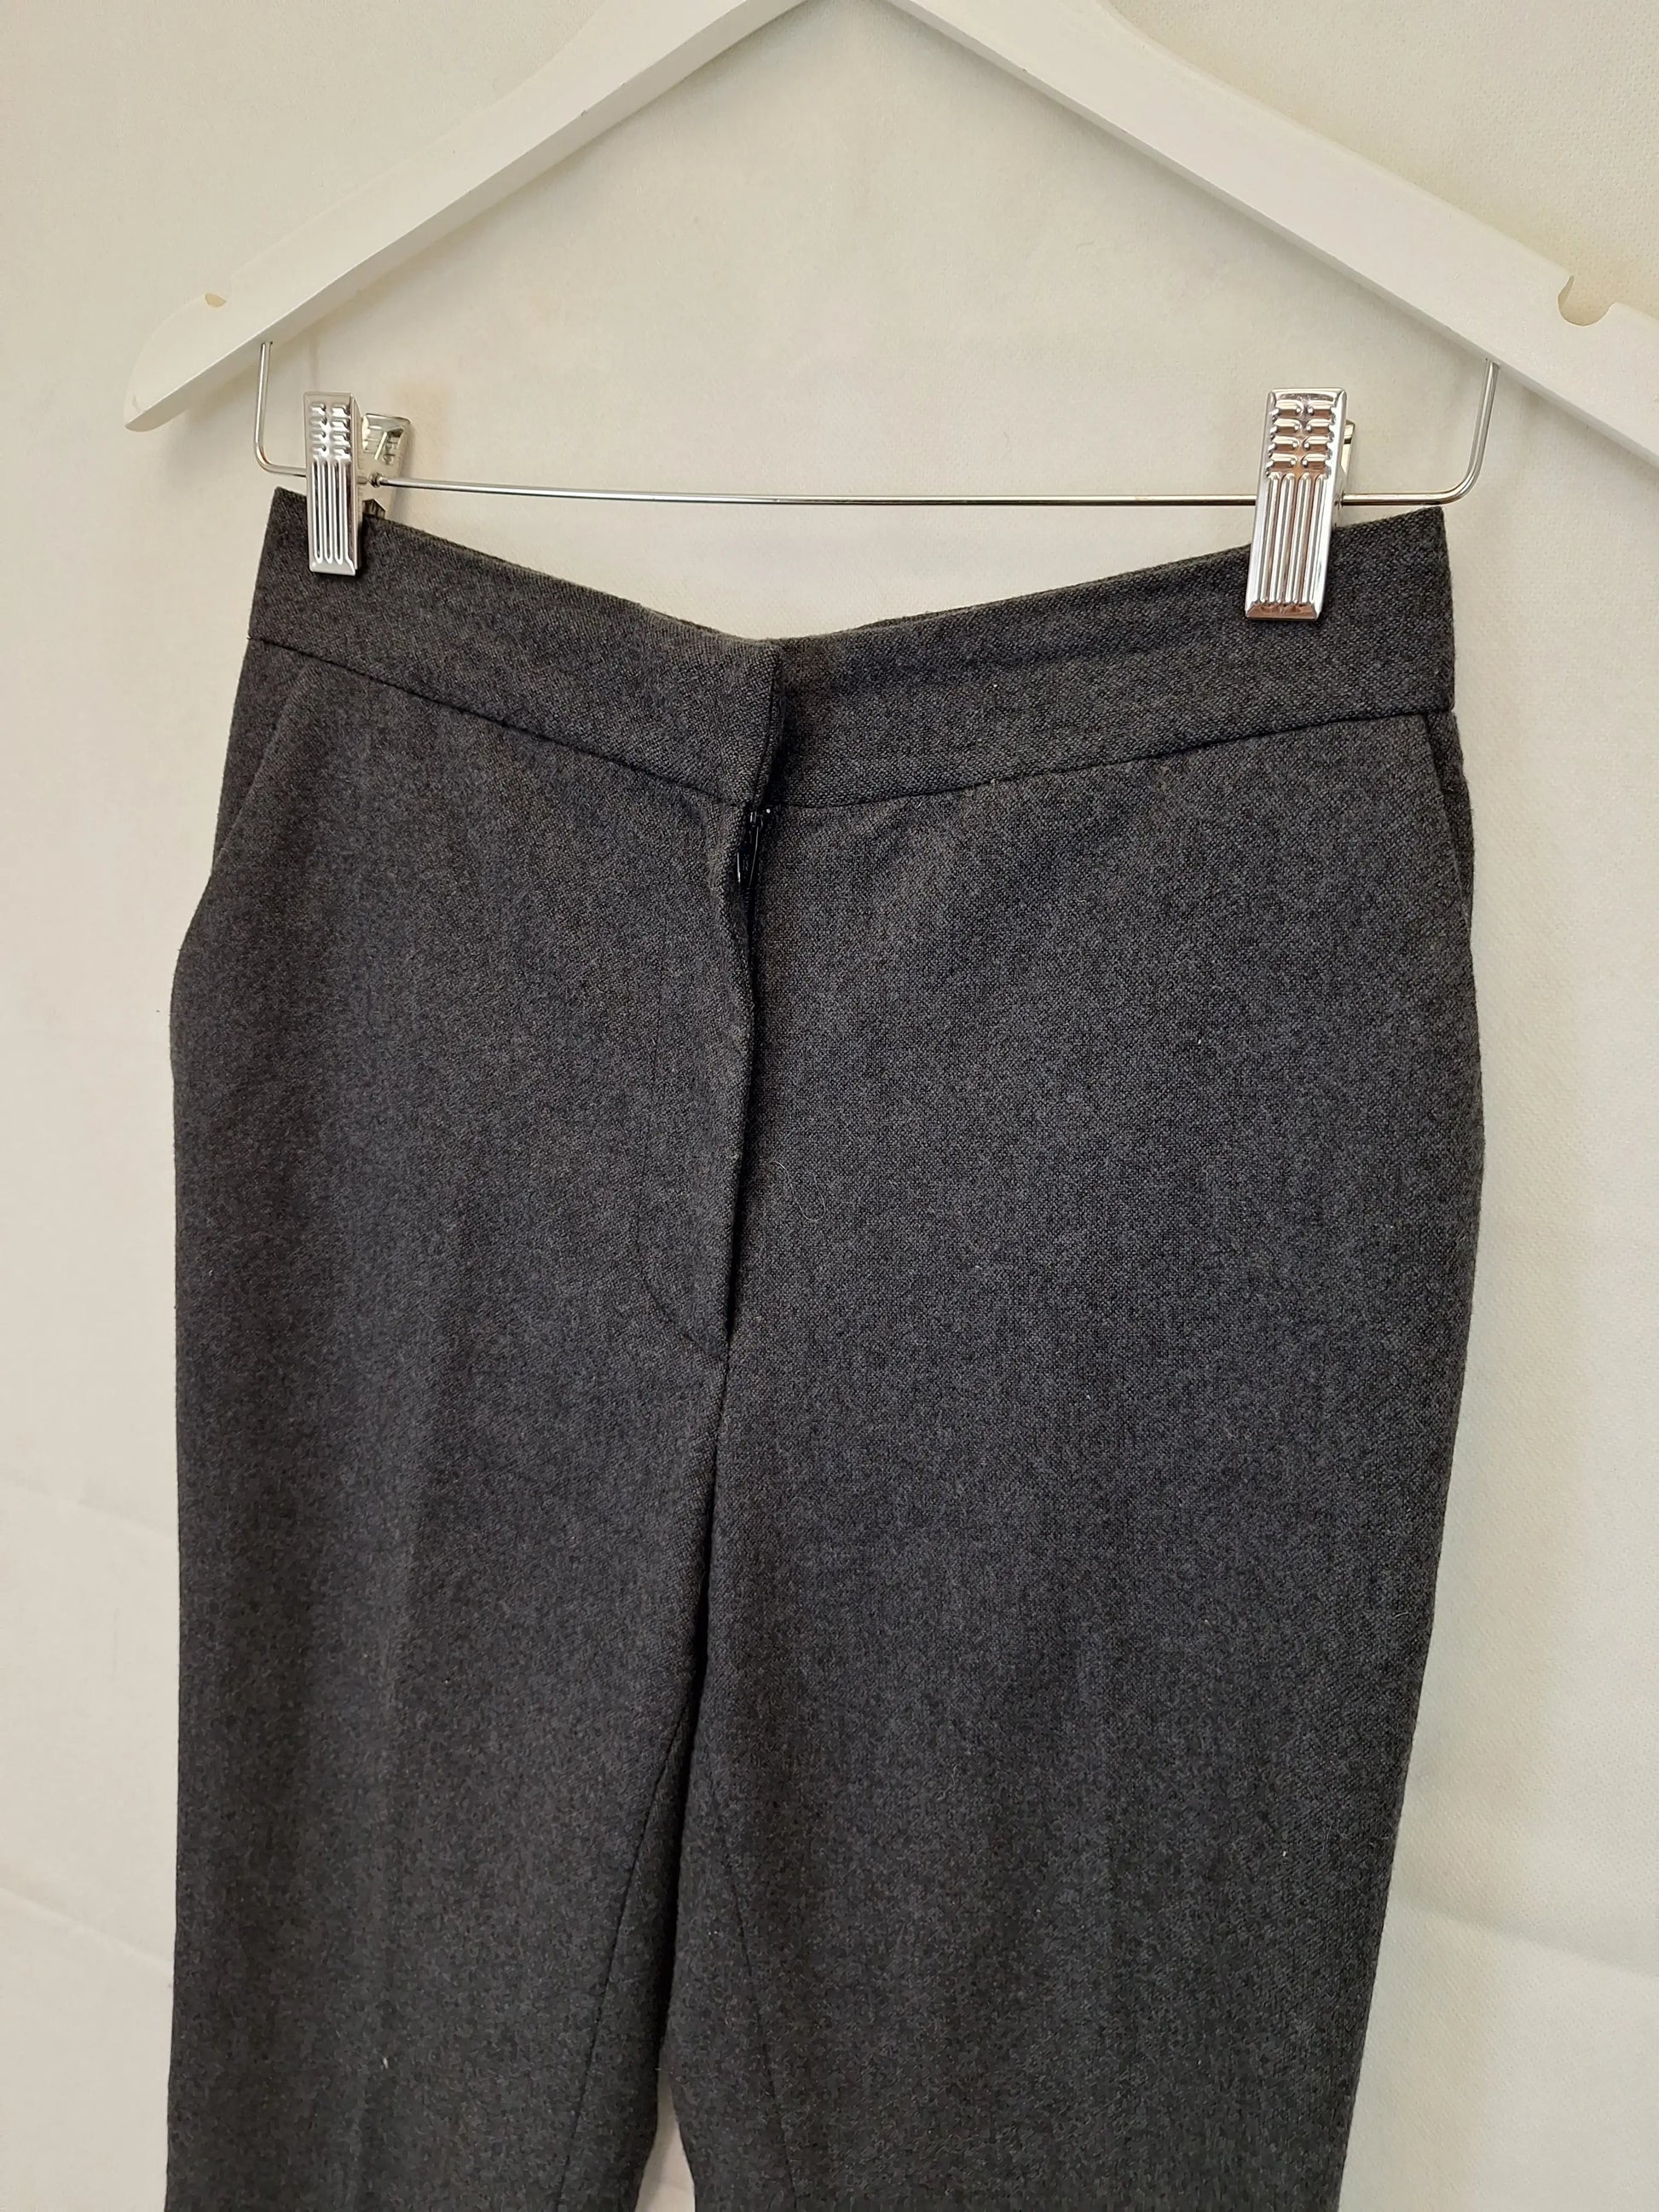 Gorman Wool Blend Work Pants Size 6 – SwapUp